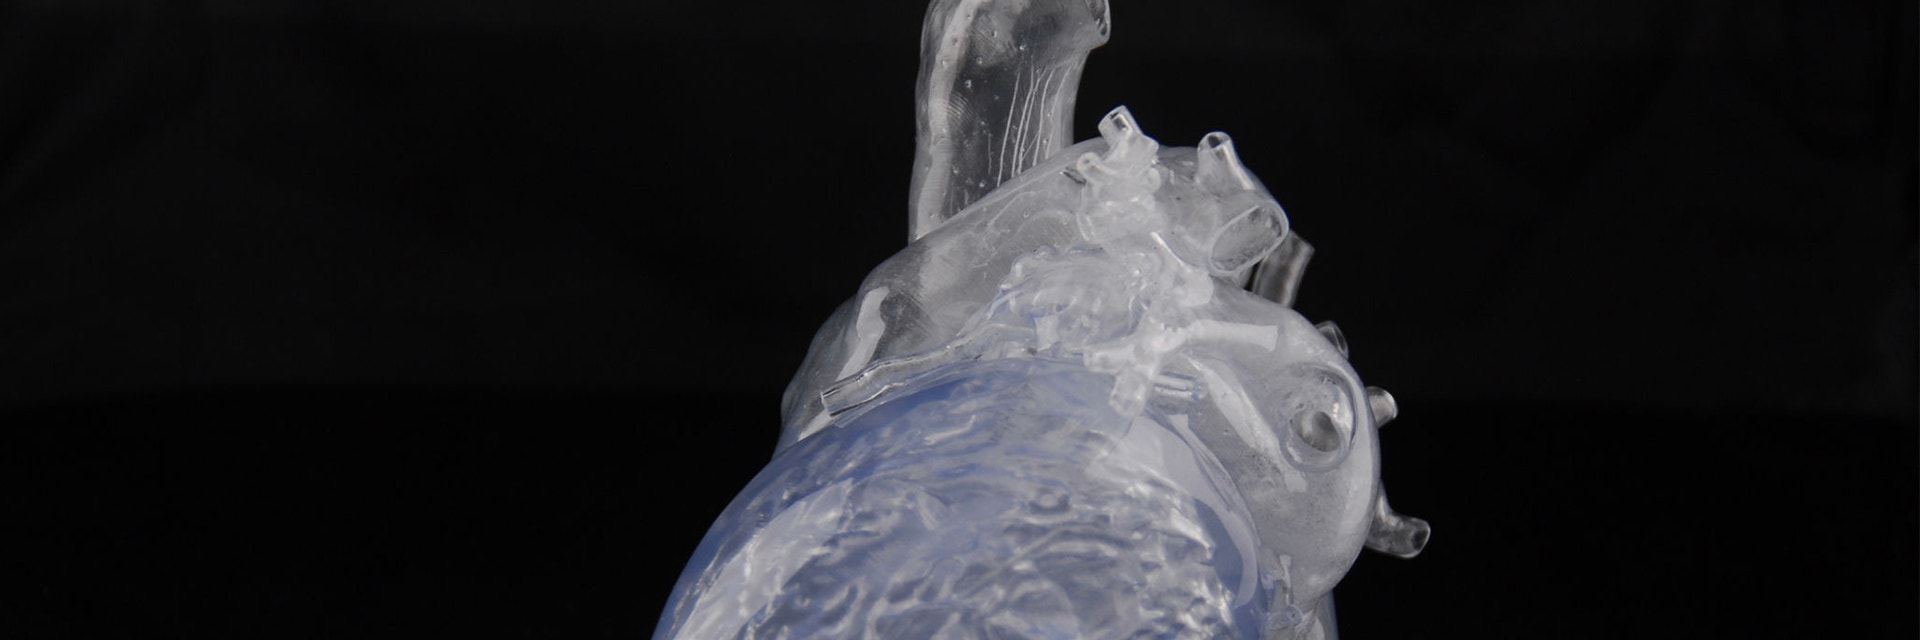 3Dプリントされた透明な心臓モデル